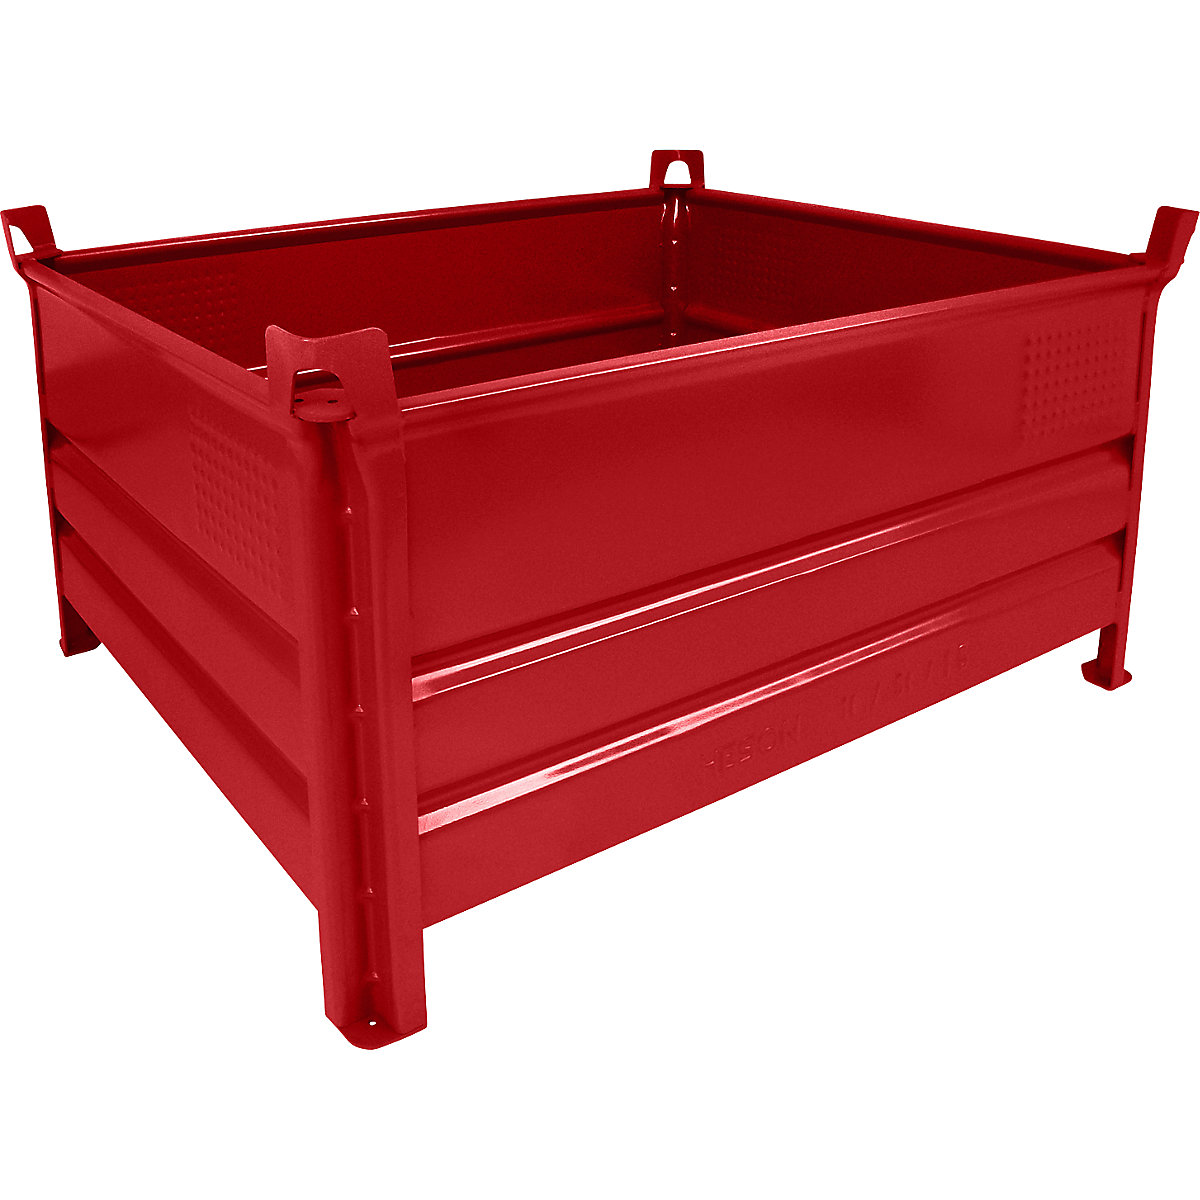 Pojemnik do ustawiania w stos z pełnymi ściankami – Heson, szer. x dł. 1000 x 1200 mm, nośność 500 kg, czerwony, od 5 szt.-6